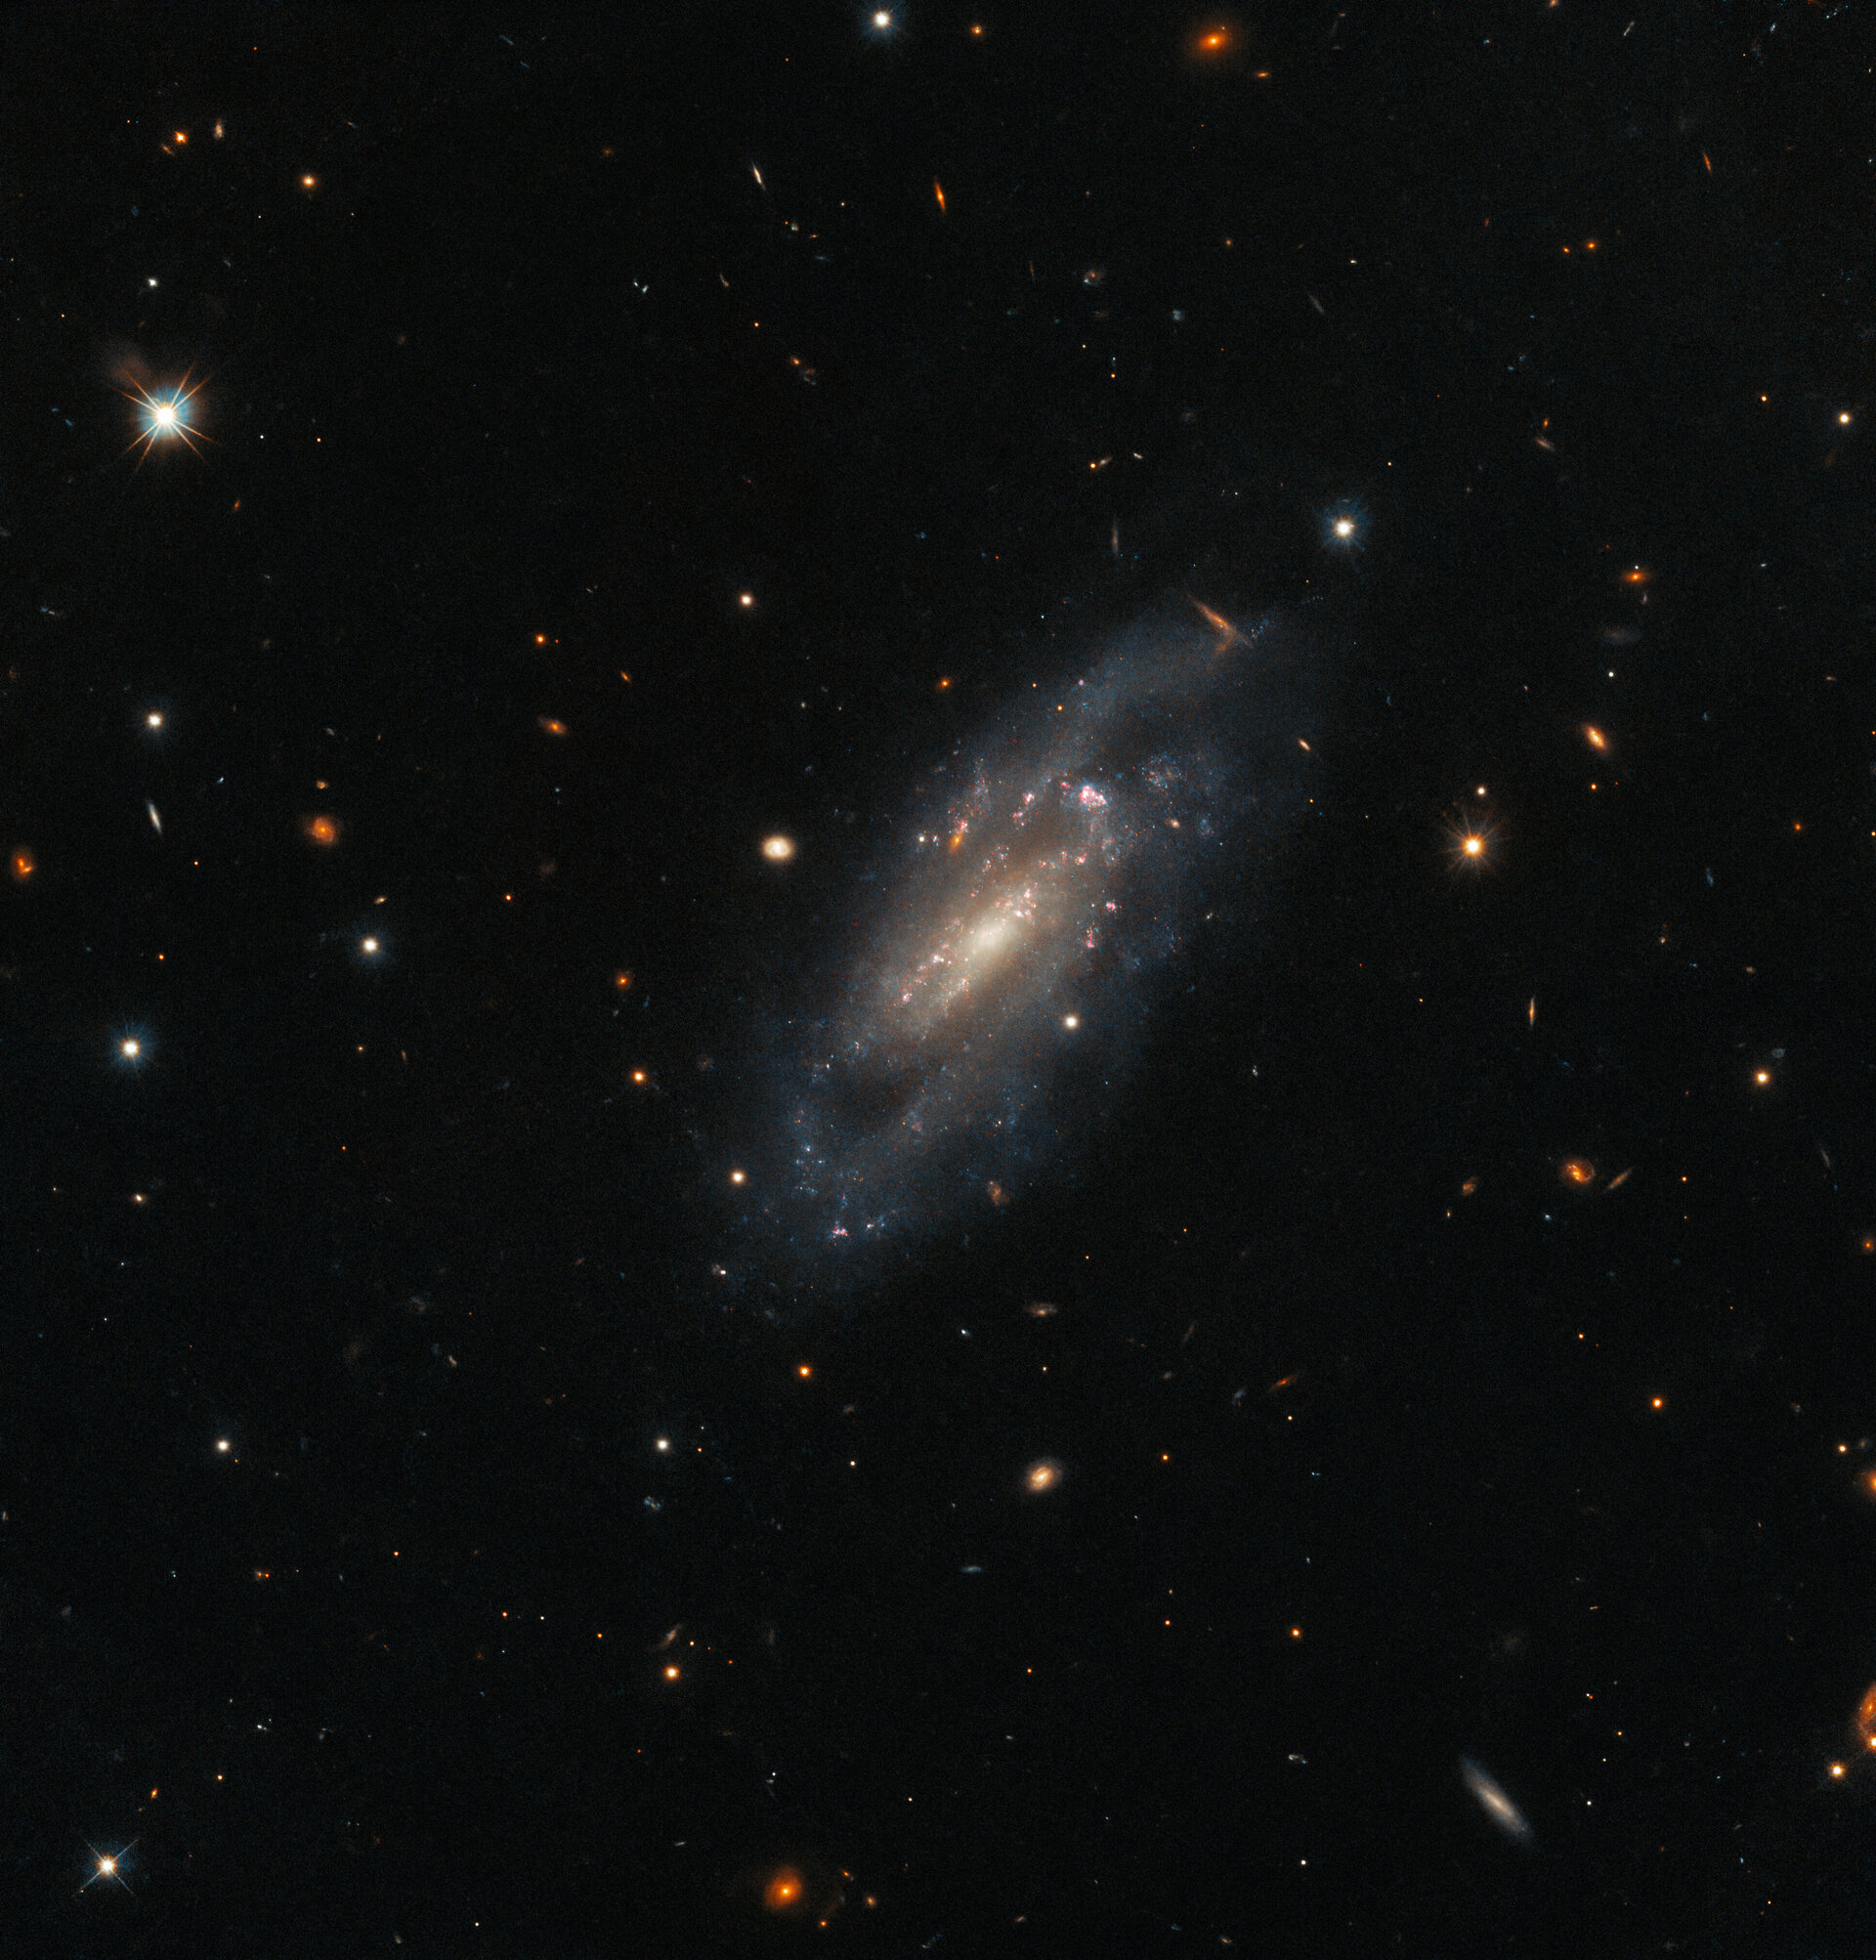 La galaxia es central en un campo de pequeñas estrellas y galaxias sobre un fondo oscuro. Crédito: ESA / Hubble & NASA, A. Filippenko, J. D. Lyman